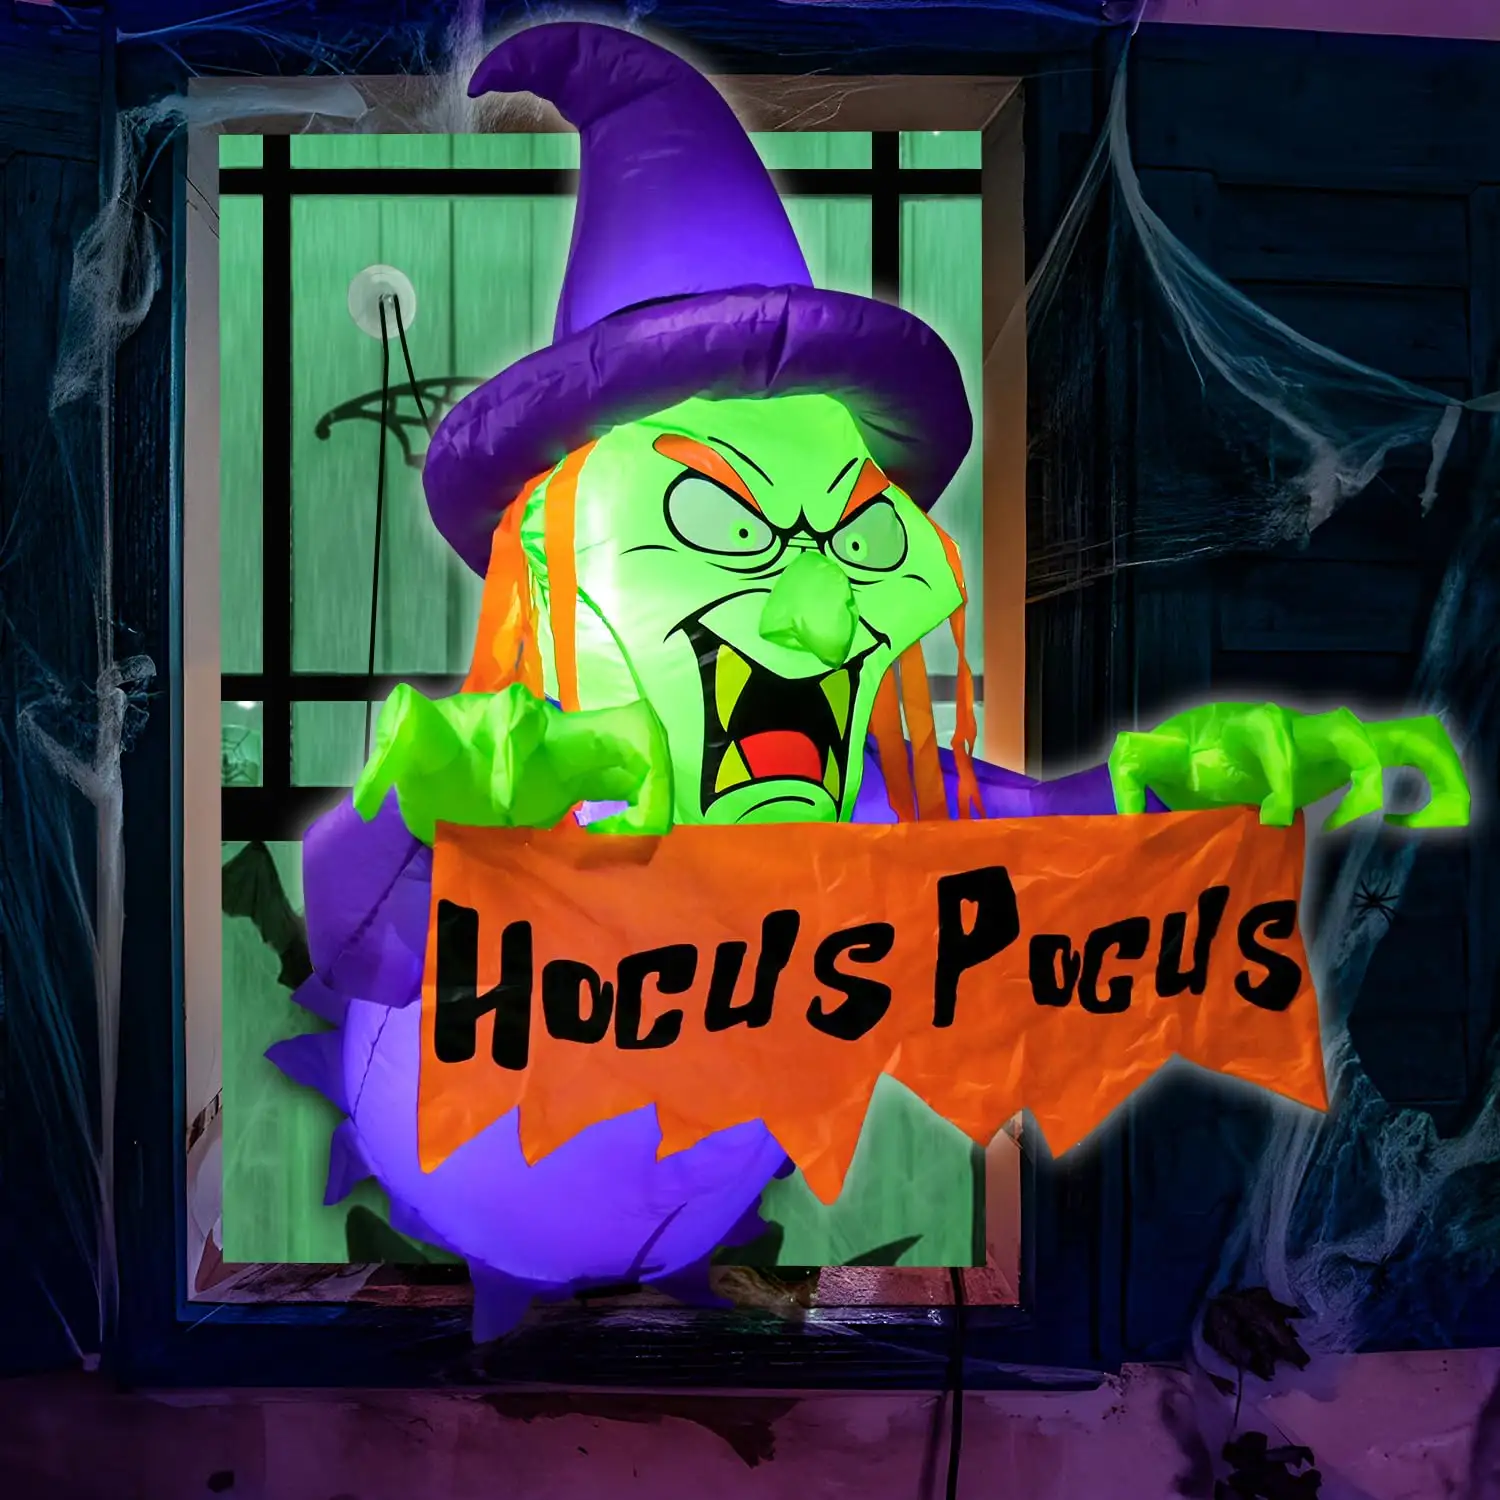 Décorations gonflables de sorcière d'Halloween de 4 pieds sorties de la fenêtre avec la bannière Hocus Pocus